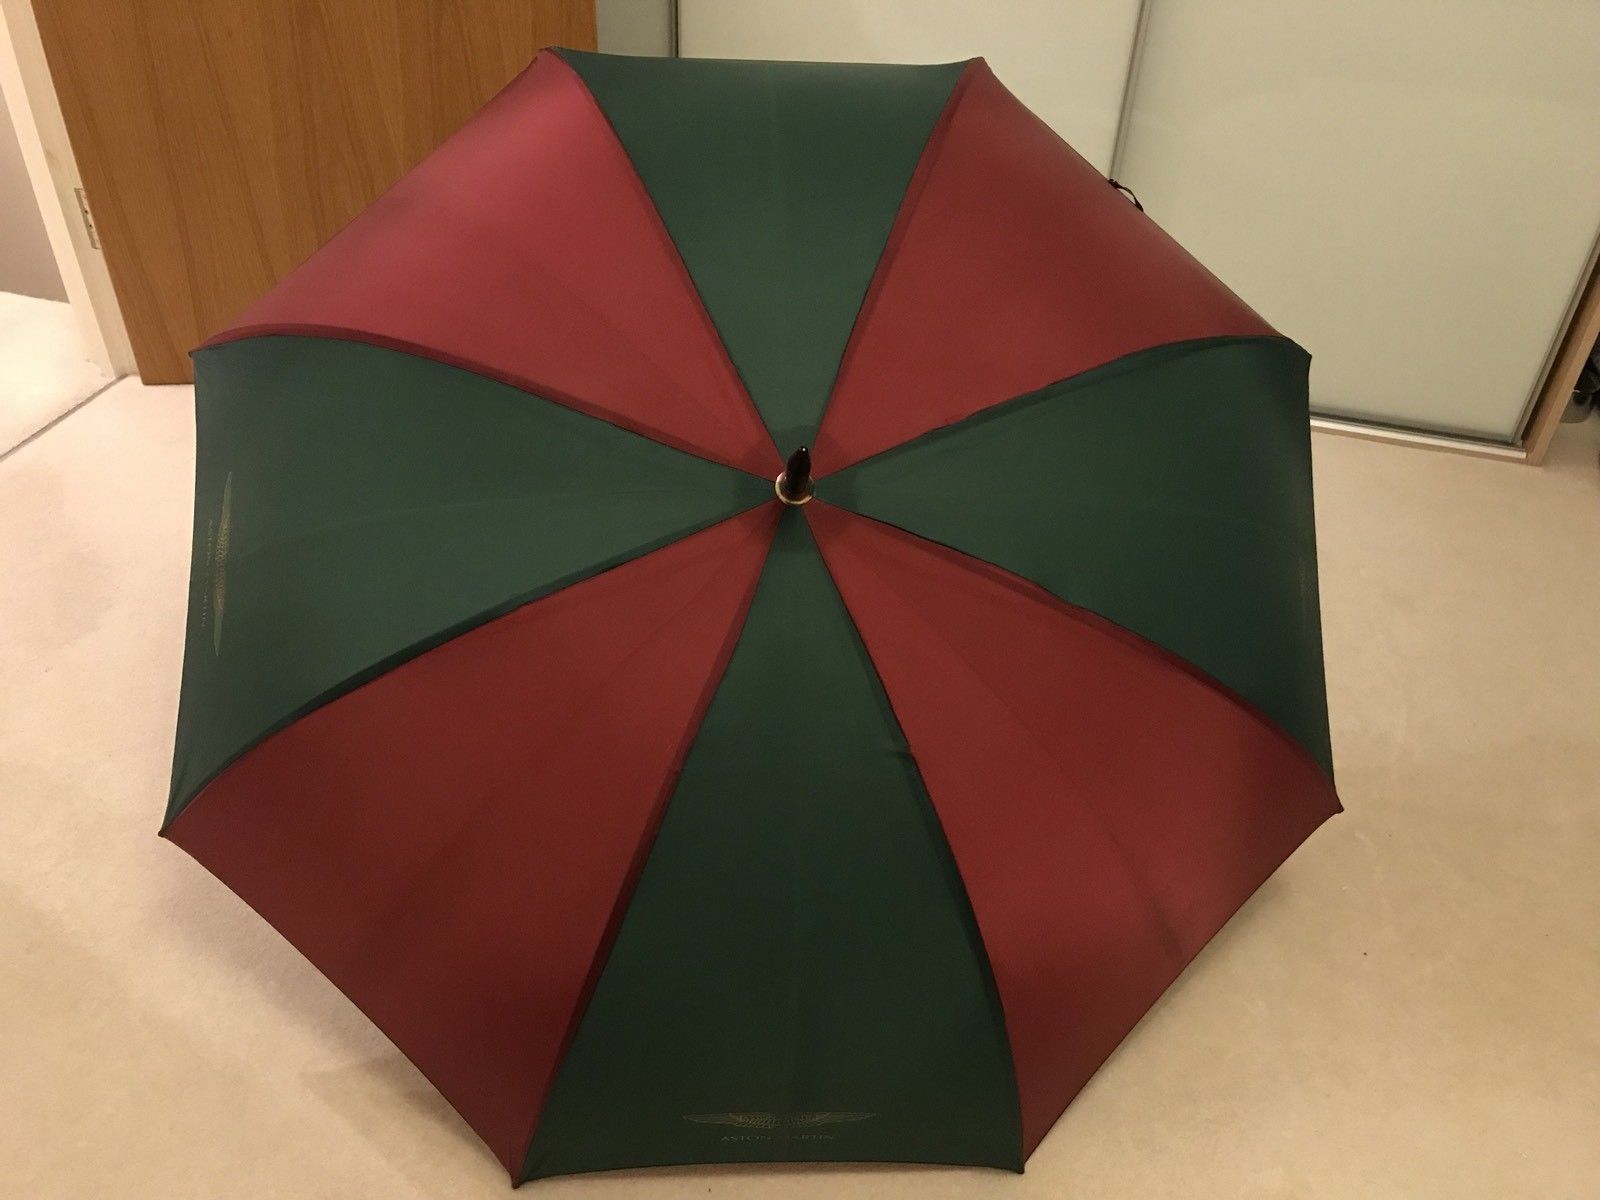 Parapluies pour hommes : 5 modèles onéreux à découvrir ! 